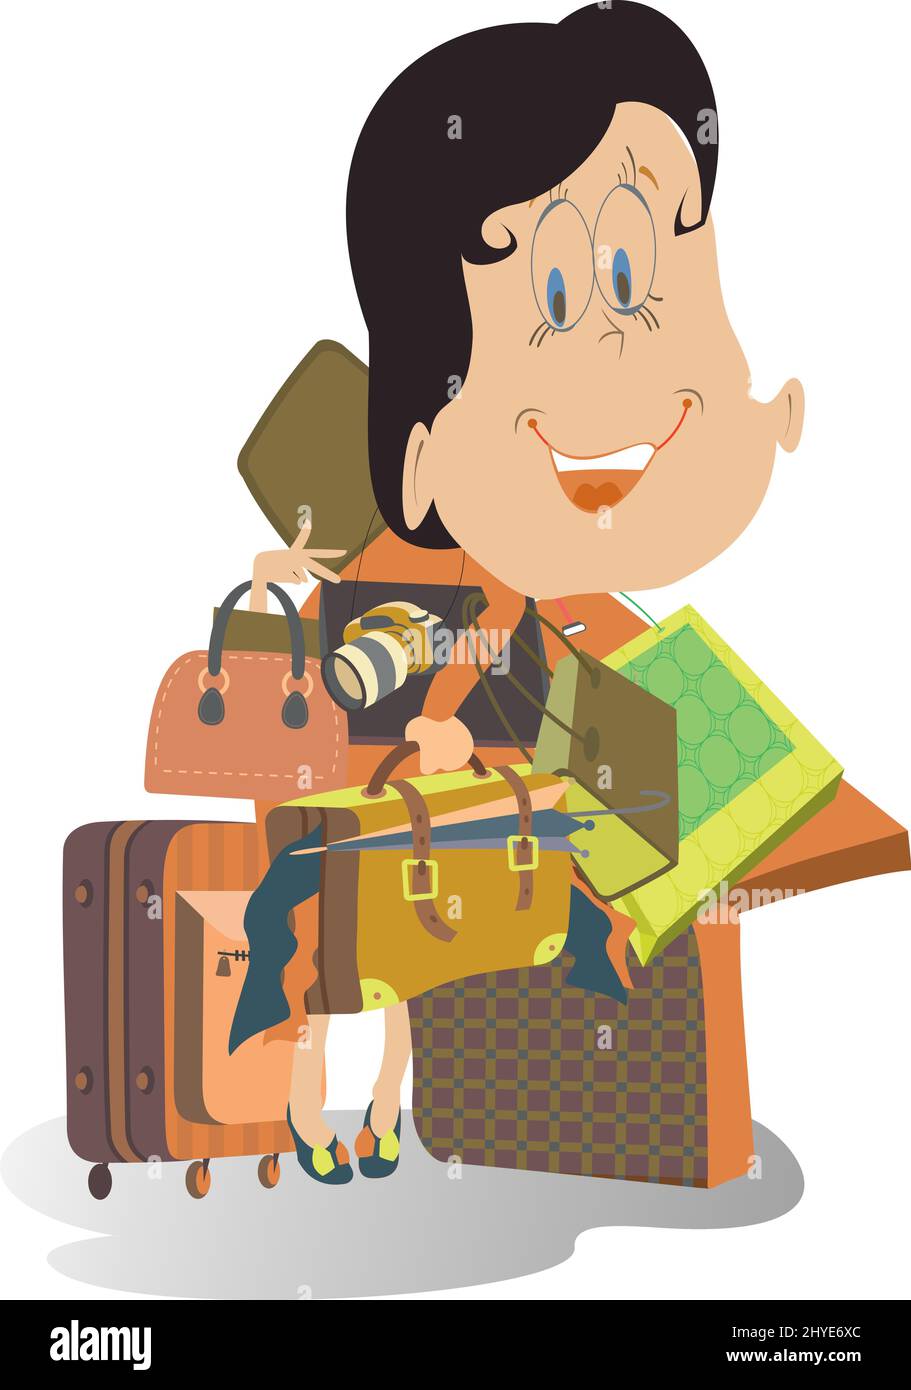 Cartoon junge Frau hält eine Menge Taschen, Kamera und Regenschirm. Frau mit einem großen Gepäck oder viel Kauf wird auf Reisen oder Einkaufen gehen Stock Vektor